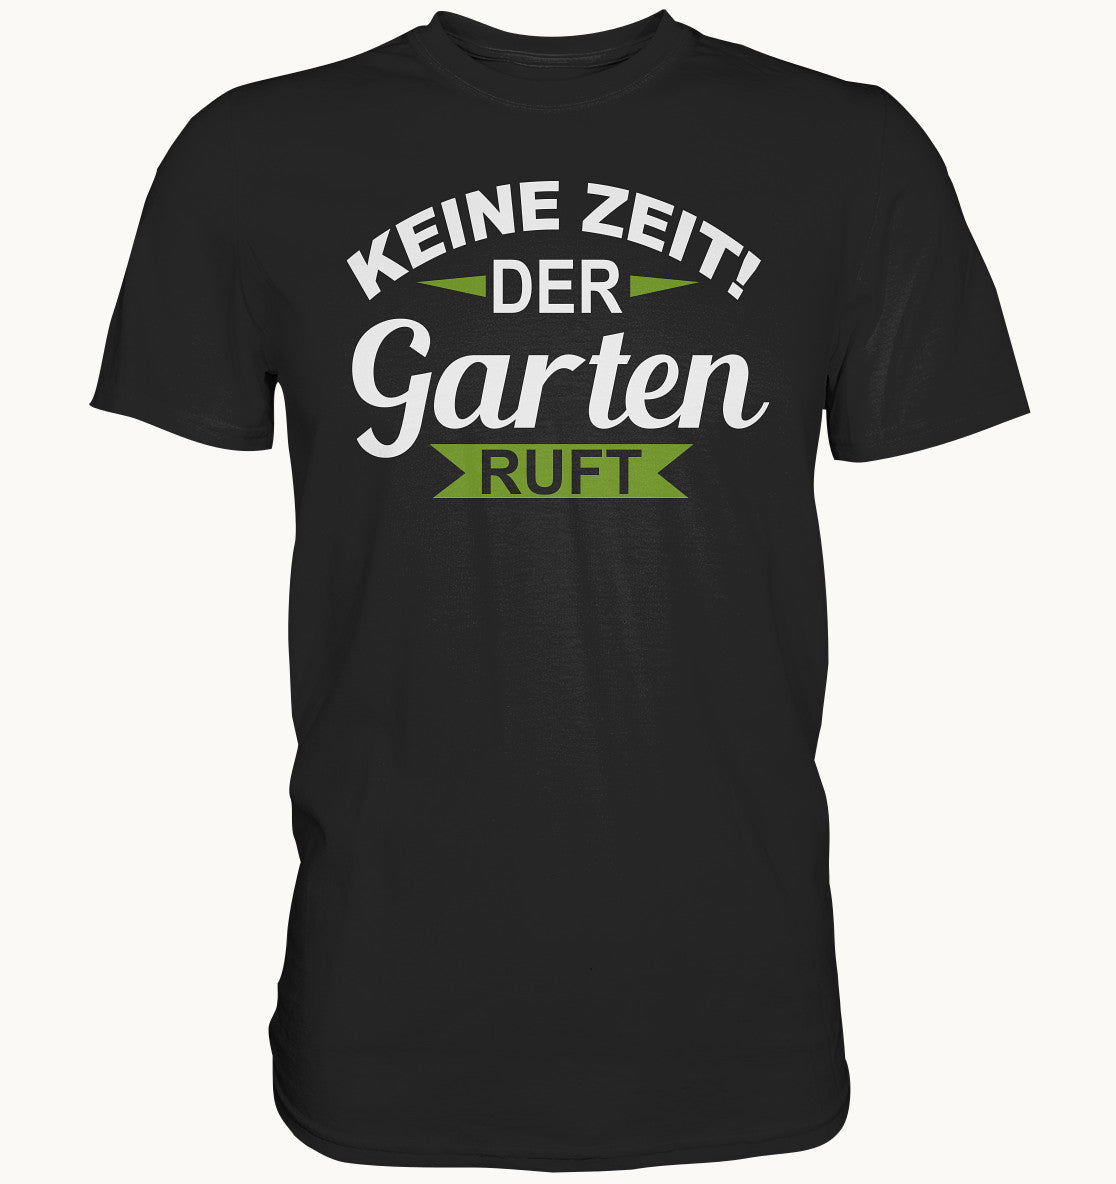 Keine Zeit der Garten ruft - Shirt Gala Bauer - Baufun Shop